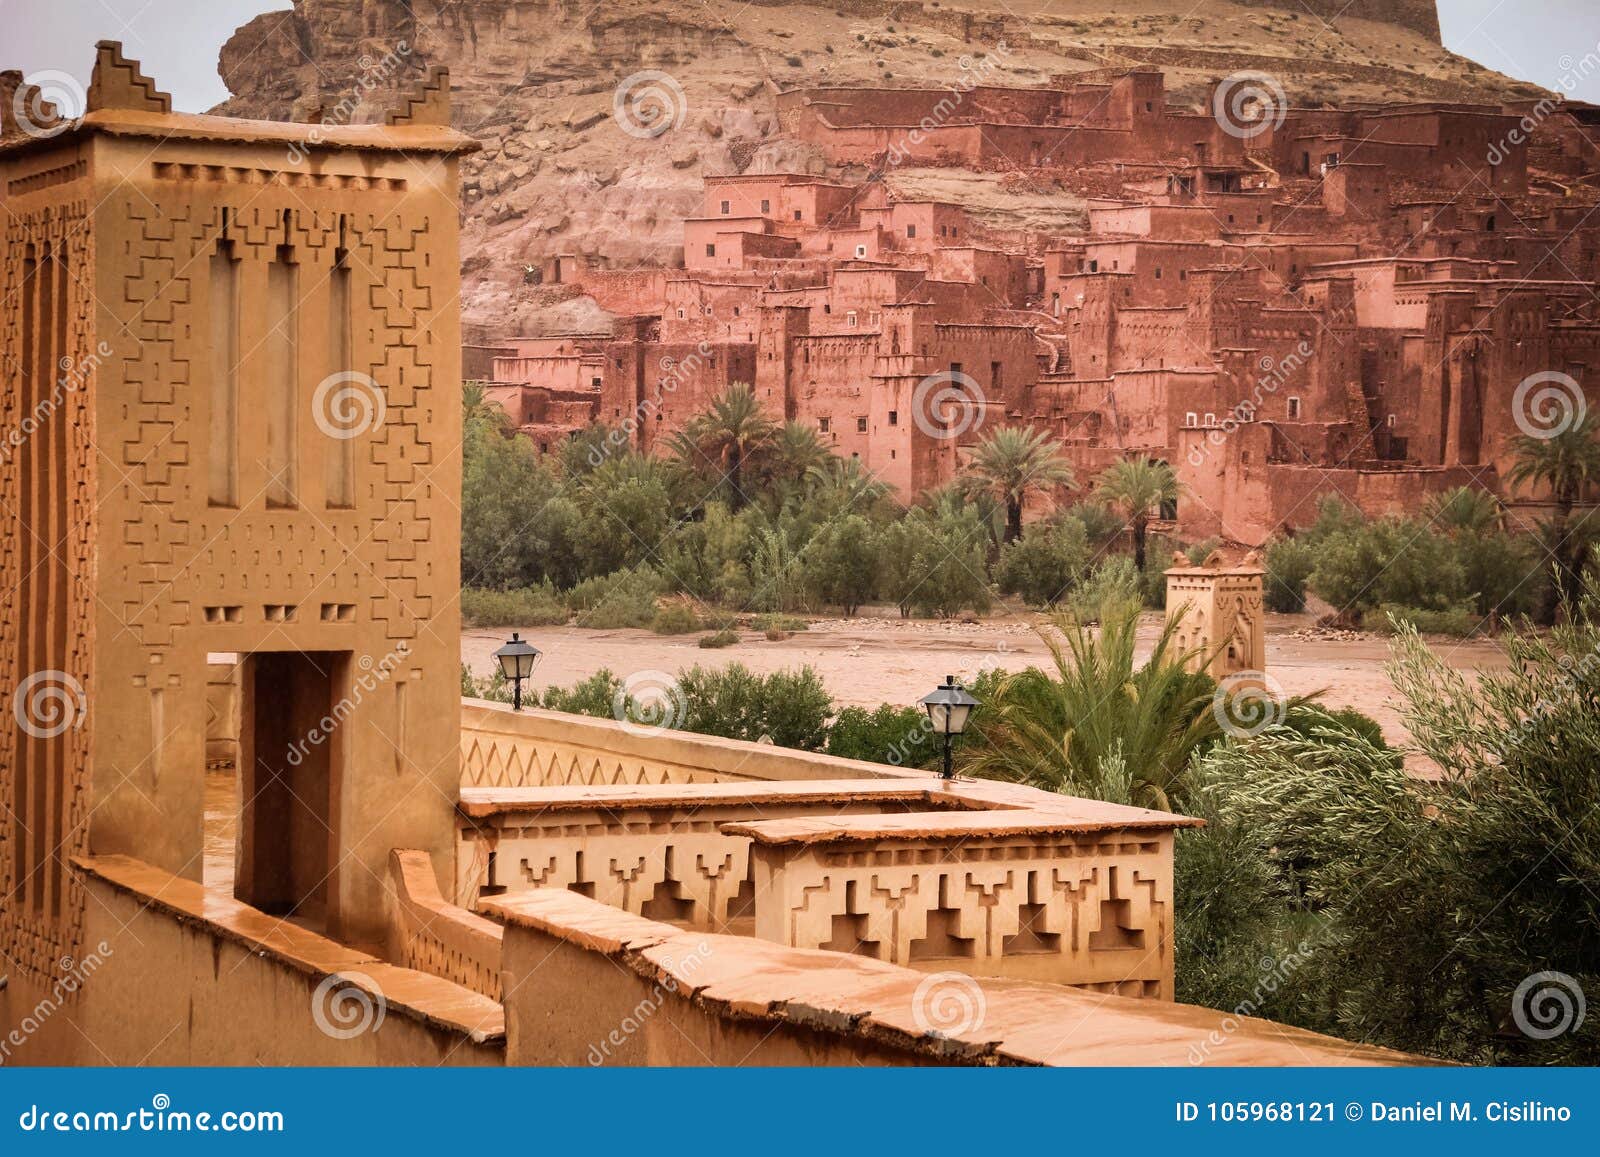 kasbah ait ben haddou. morocco.